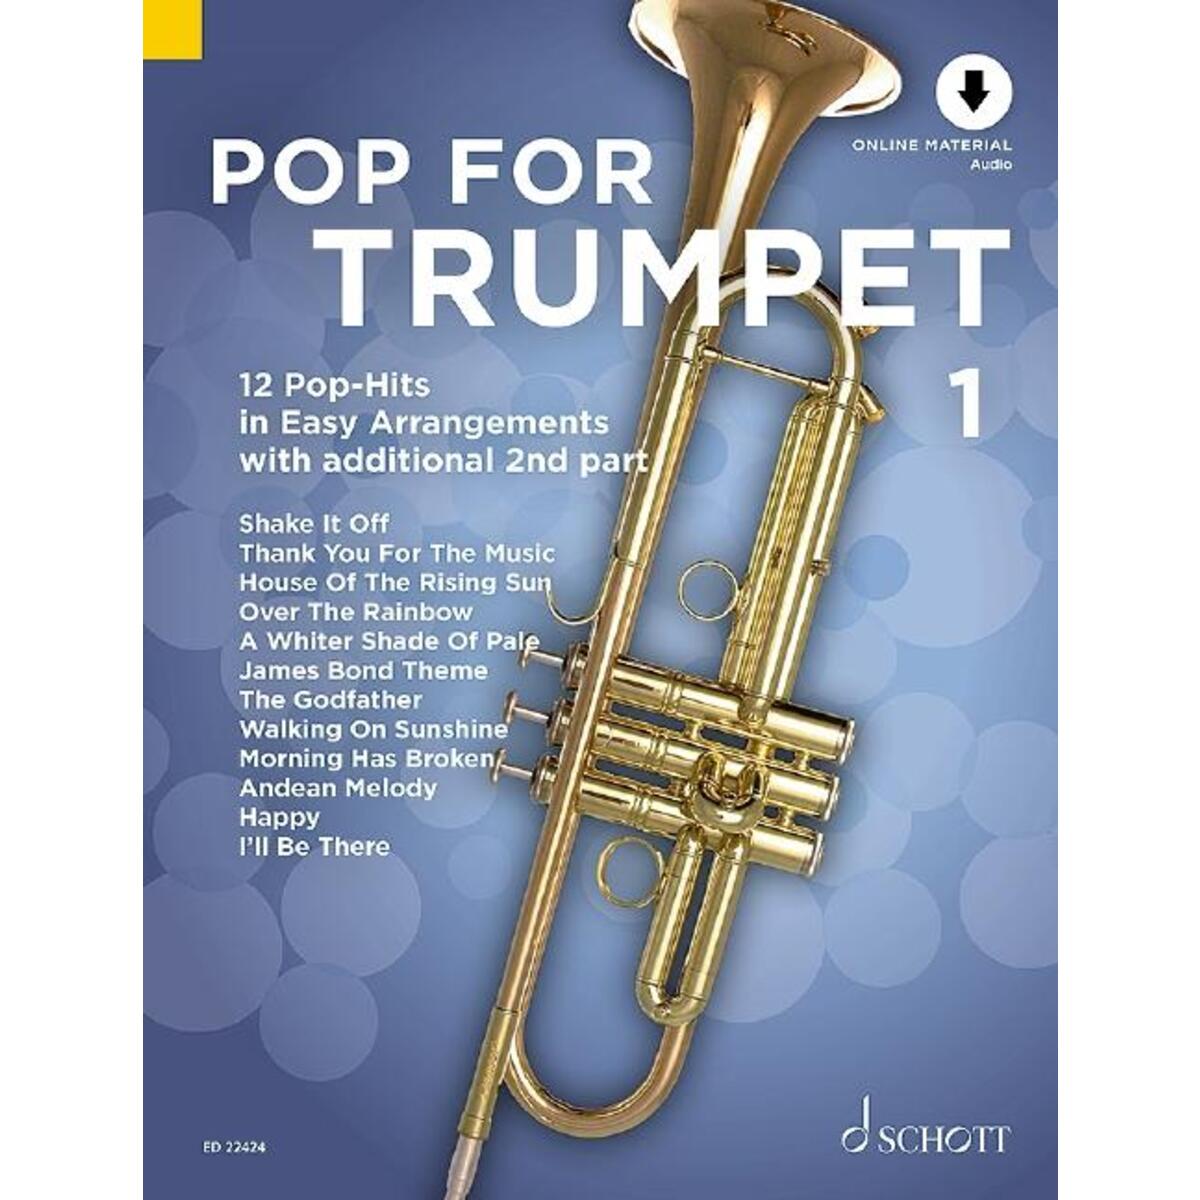 Pop For Trumpet 1 von Schott Music